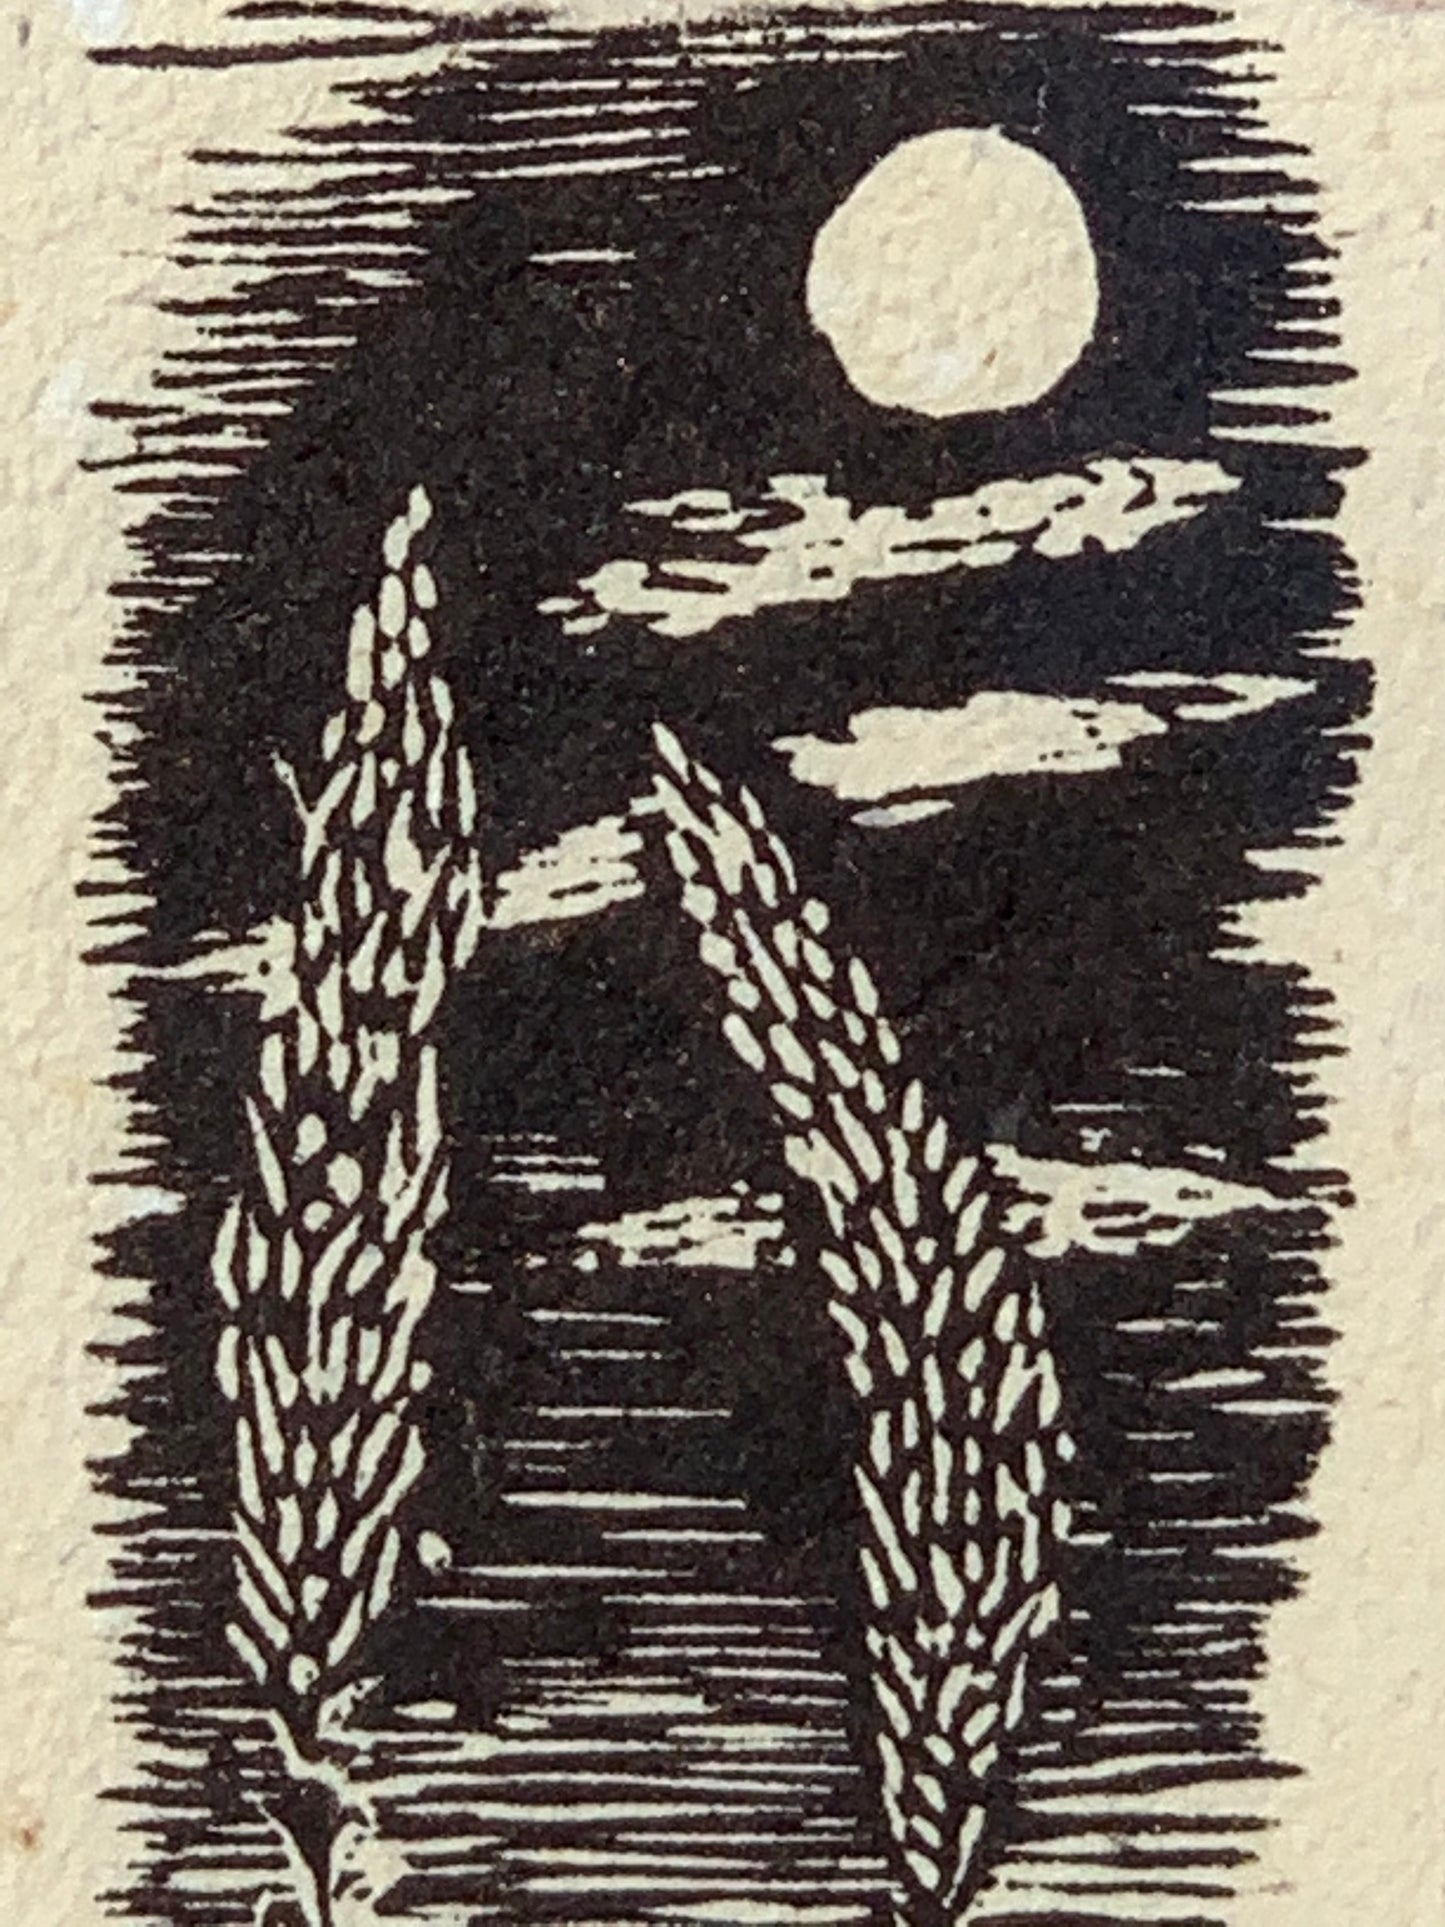 FRAMED Woodcut Agaves of the Southwest Desert Under Moonlight handmade paper